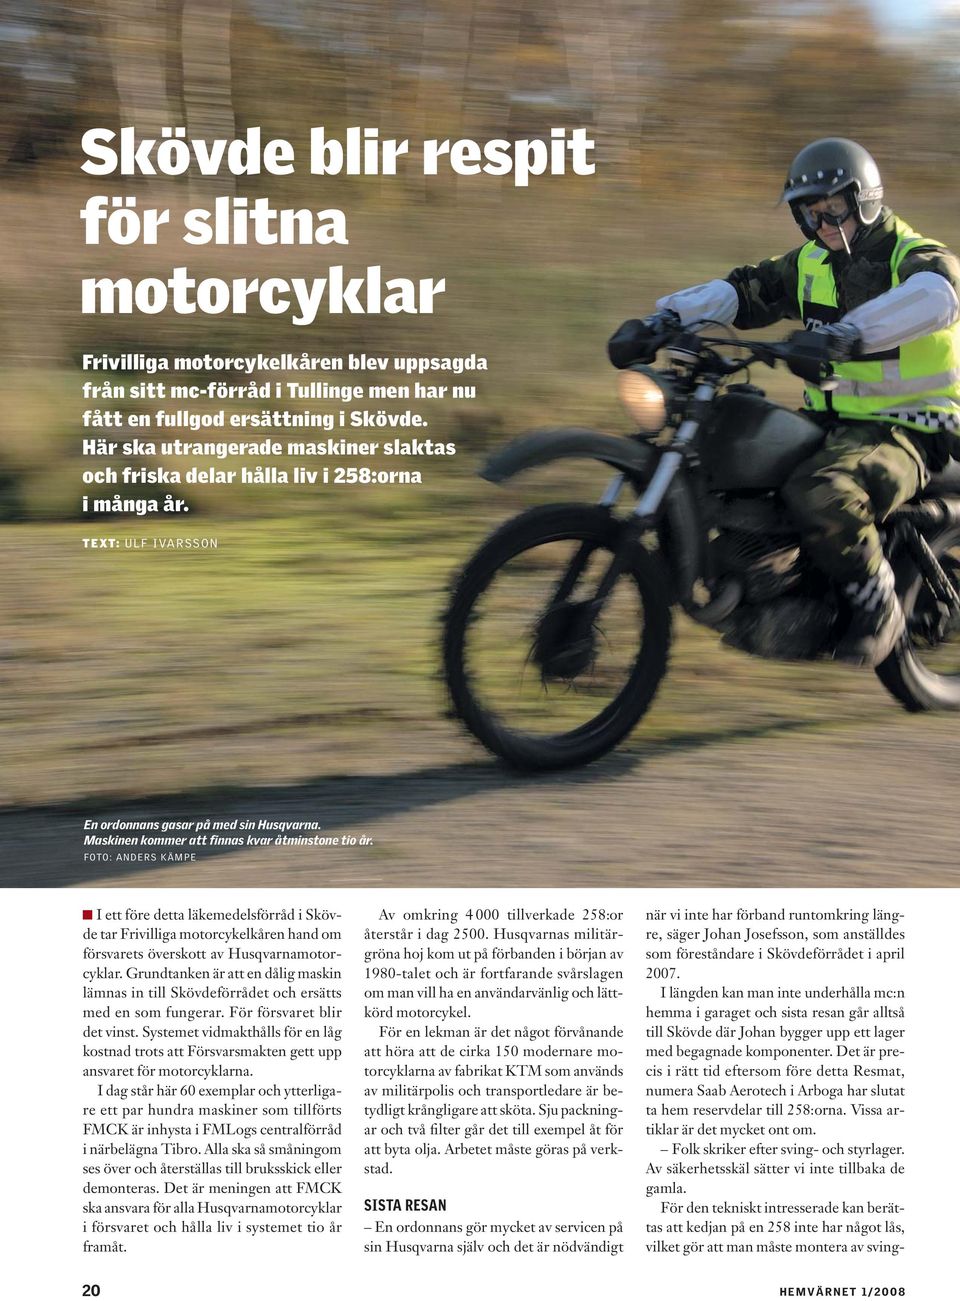 FOTO: ANDERS KÄMPE I ett före detta läkemedelsförråd i Skövde tar Frivilliga motorcykelkåren hand om försvarets överskott av Husqvarnamotorcyklar.